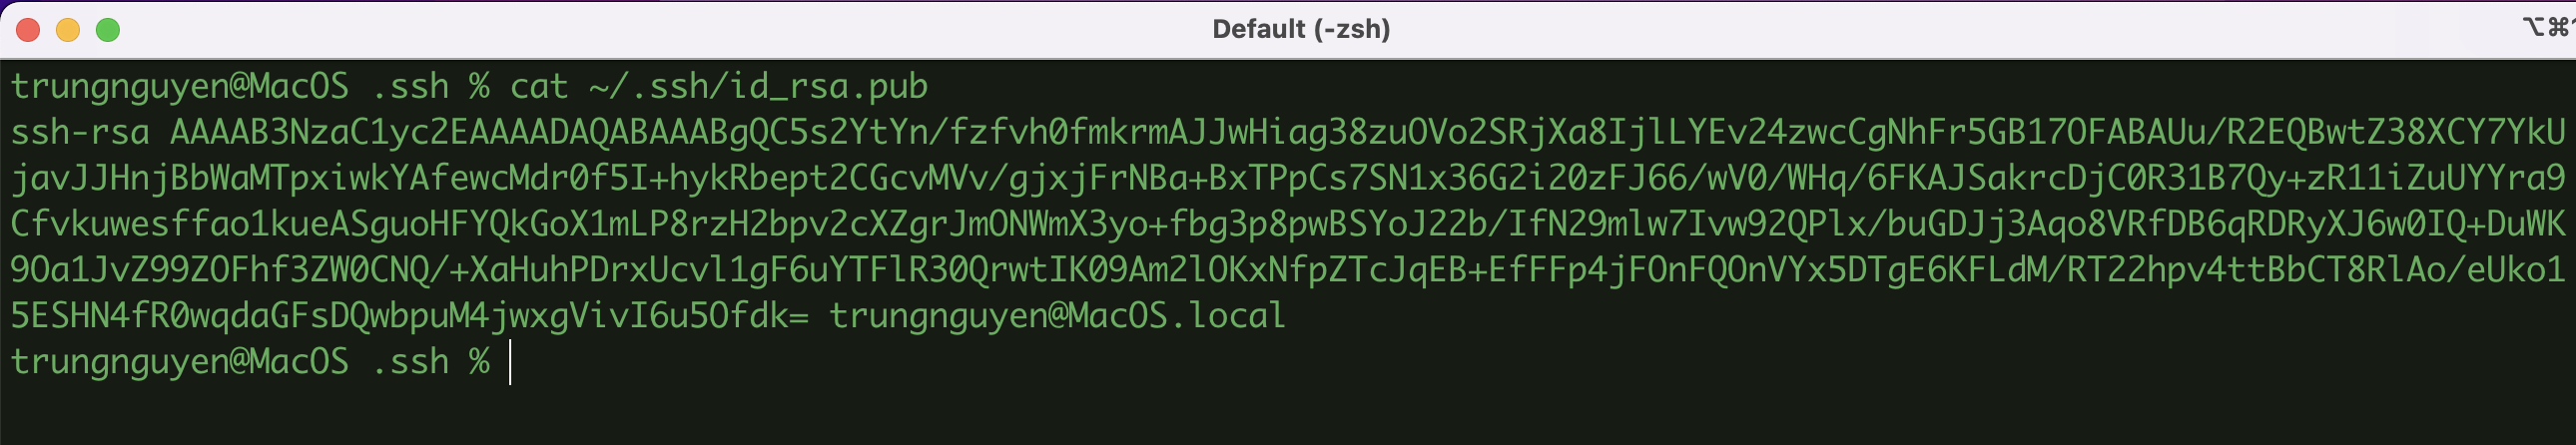 Hướng dẫn tạo SSH Key trên MacOS